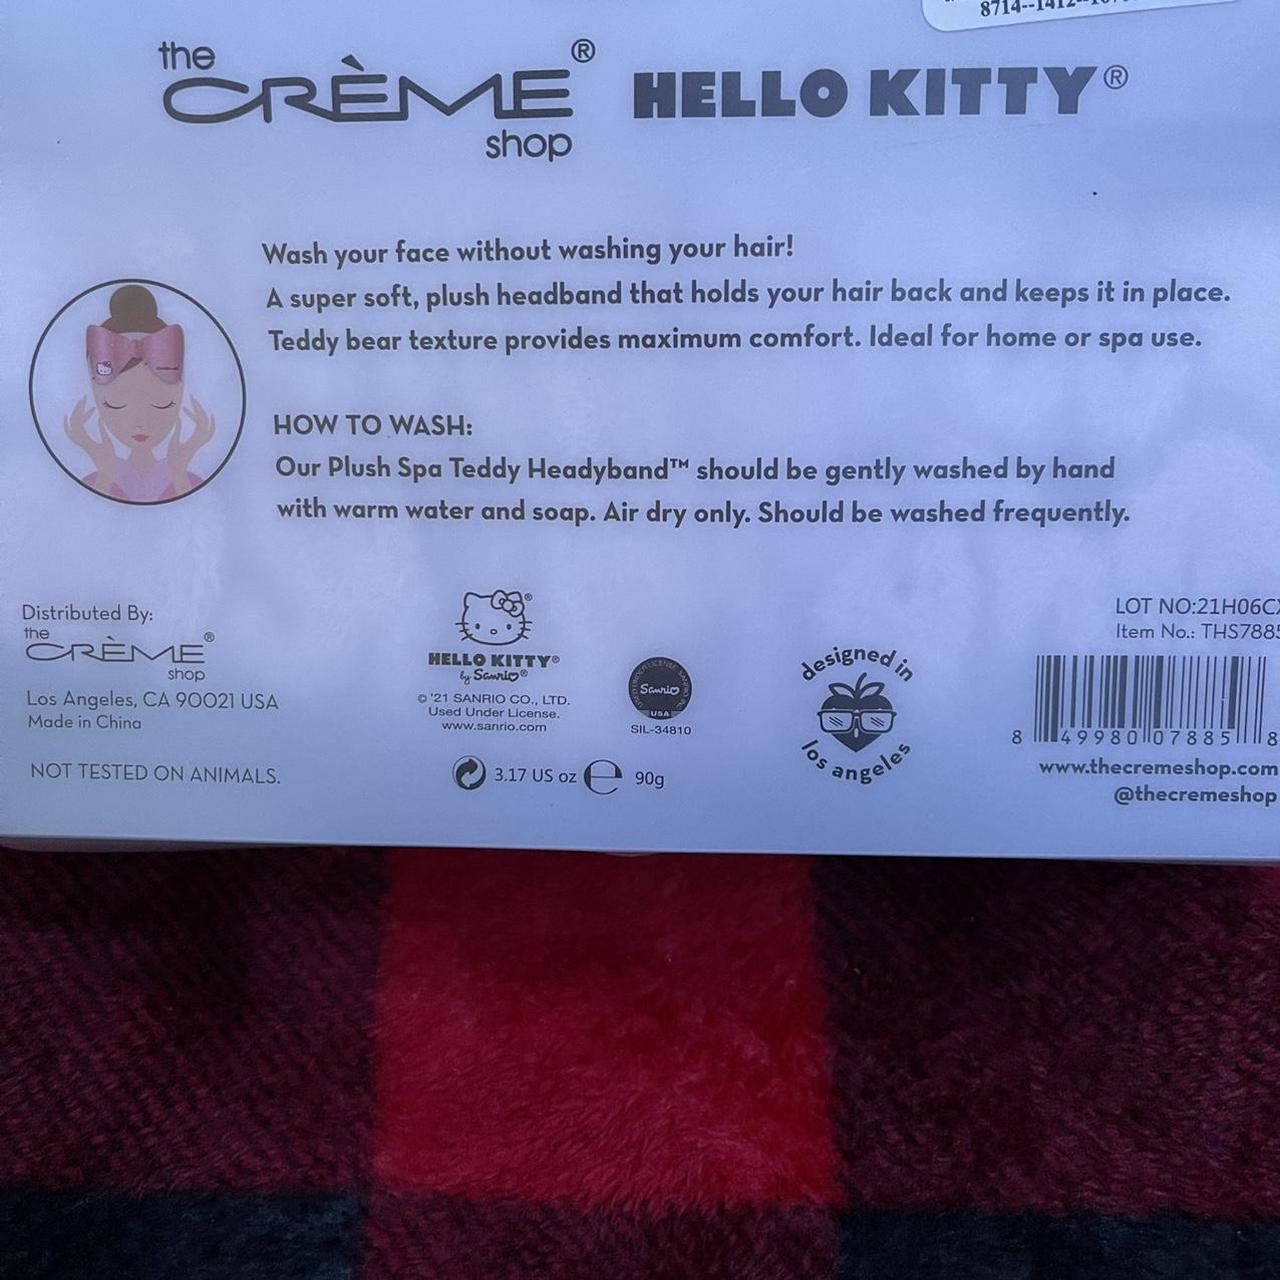 Product Image 4 - Hello Kitty Spa Headband

hello kitty